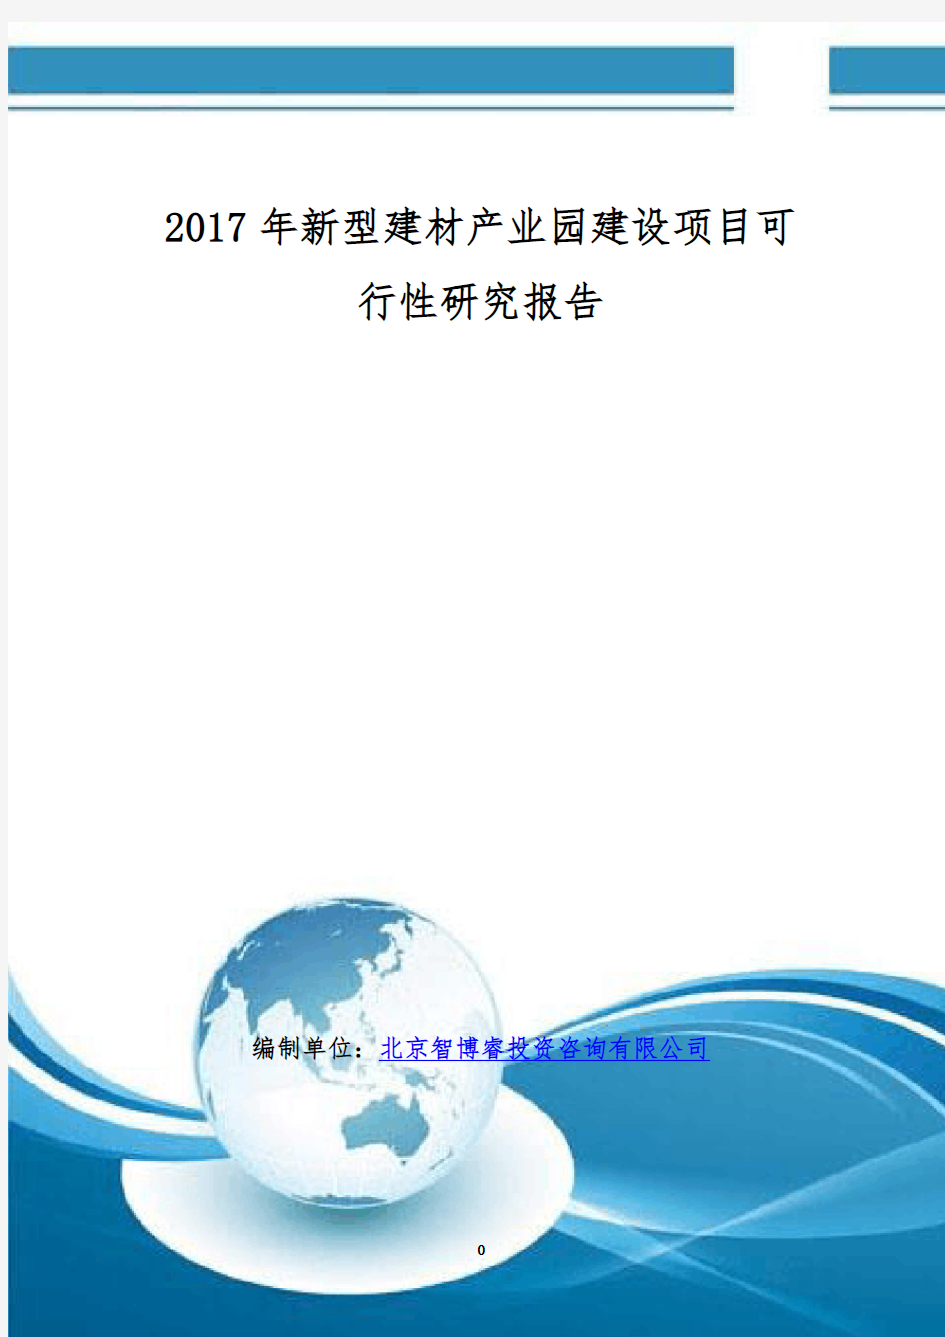 2017年新型建材产业园建设项目可行性研究报告(编制大纲)